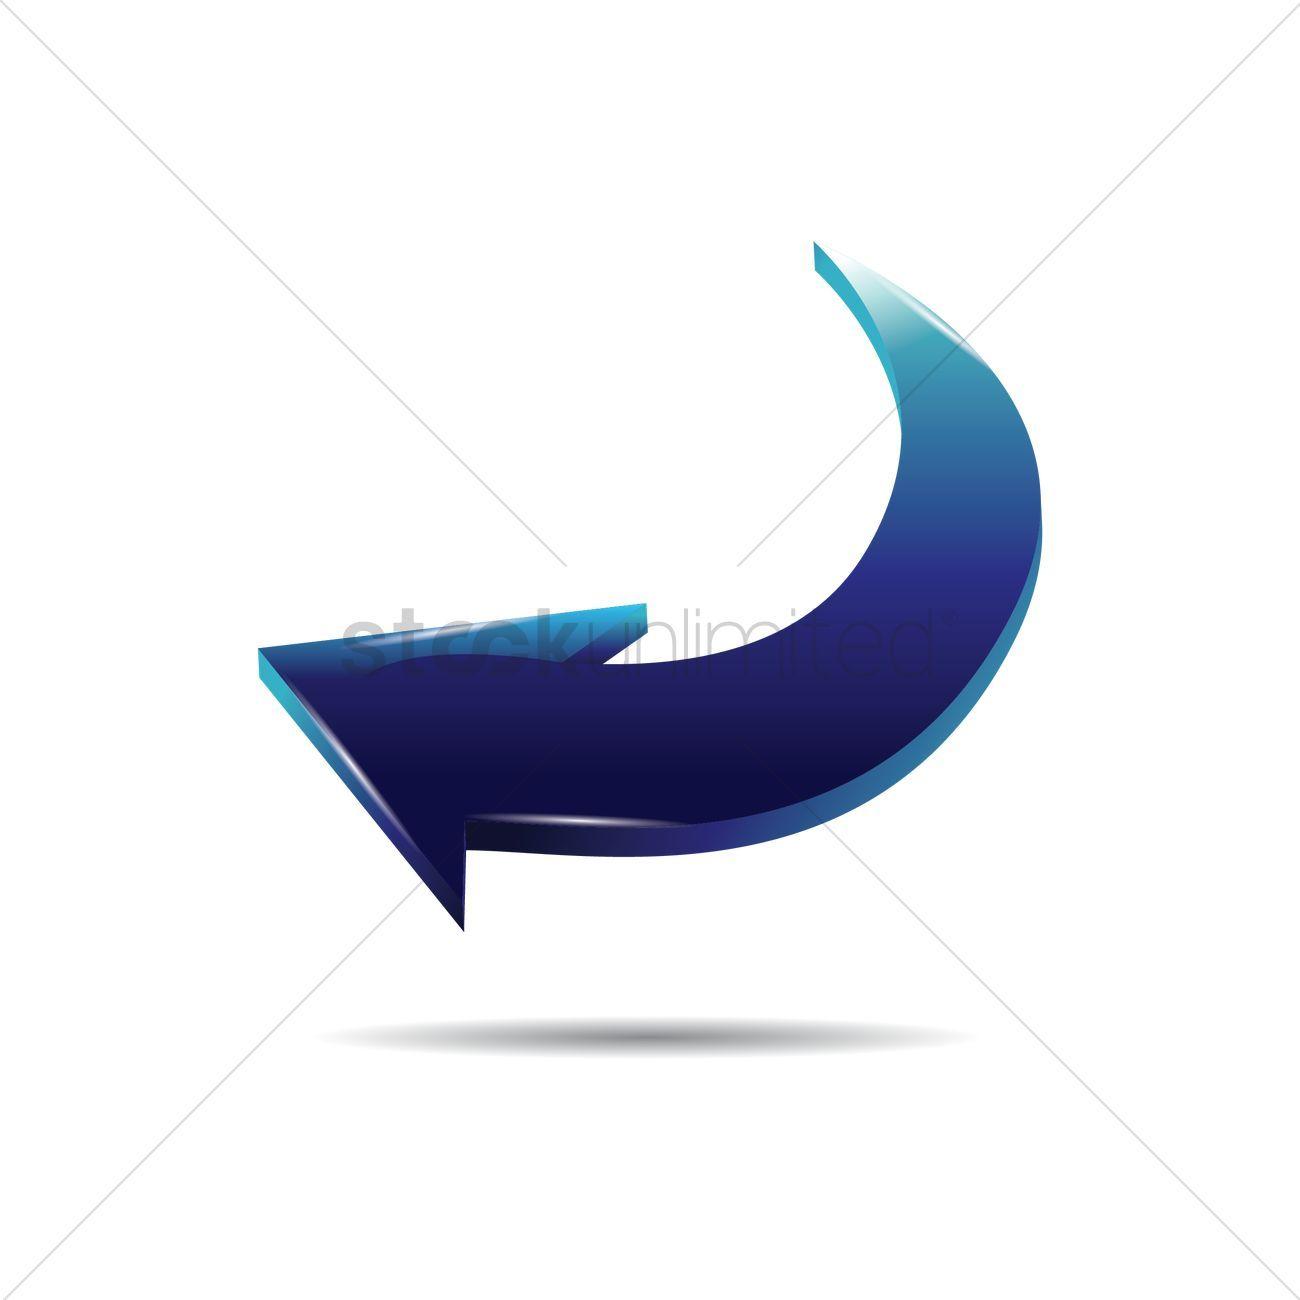 Curved Arrow Logo - 3D left curved arrow Vector Image